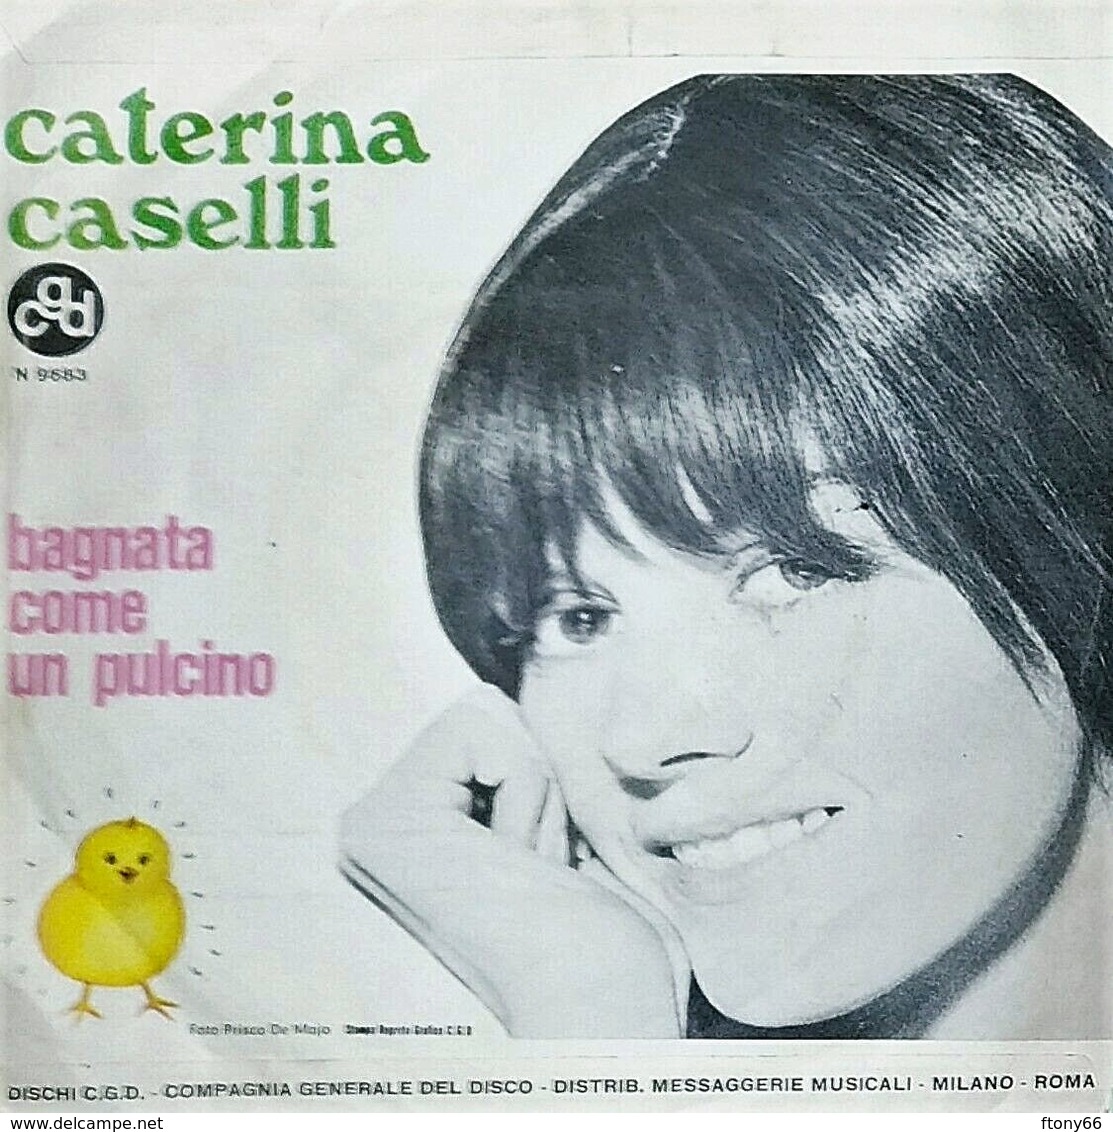 MA19 45 Giri CATERINA CASELLI "L' OROLOGIO / BAGNATA COME UN PULCINO" CGD 1968 - 7'' Vinyl Record - Other - Italian Music